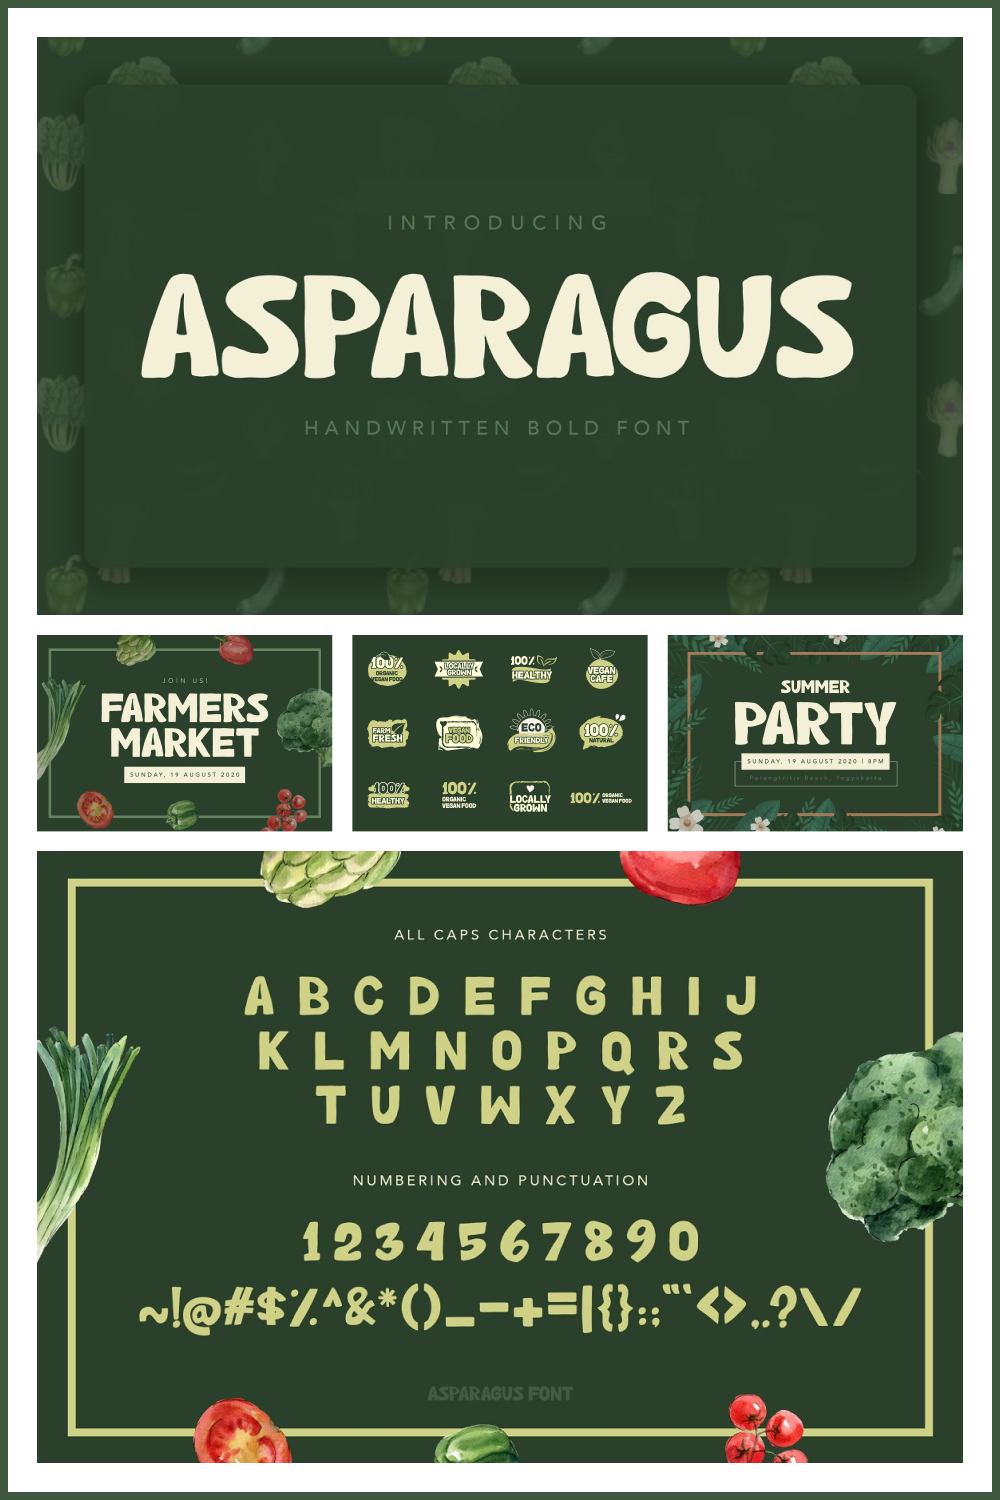 asparagus handwritten font 02 50